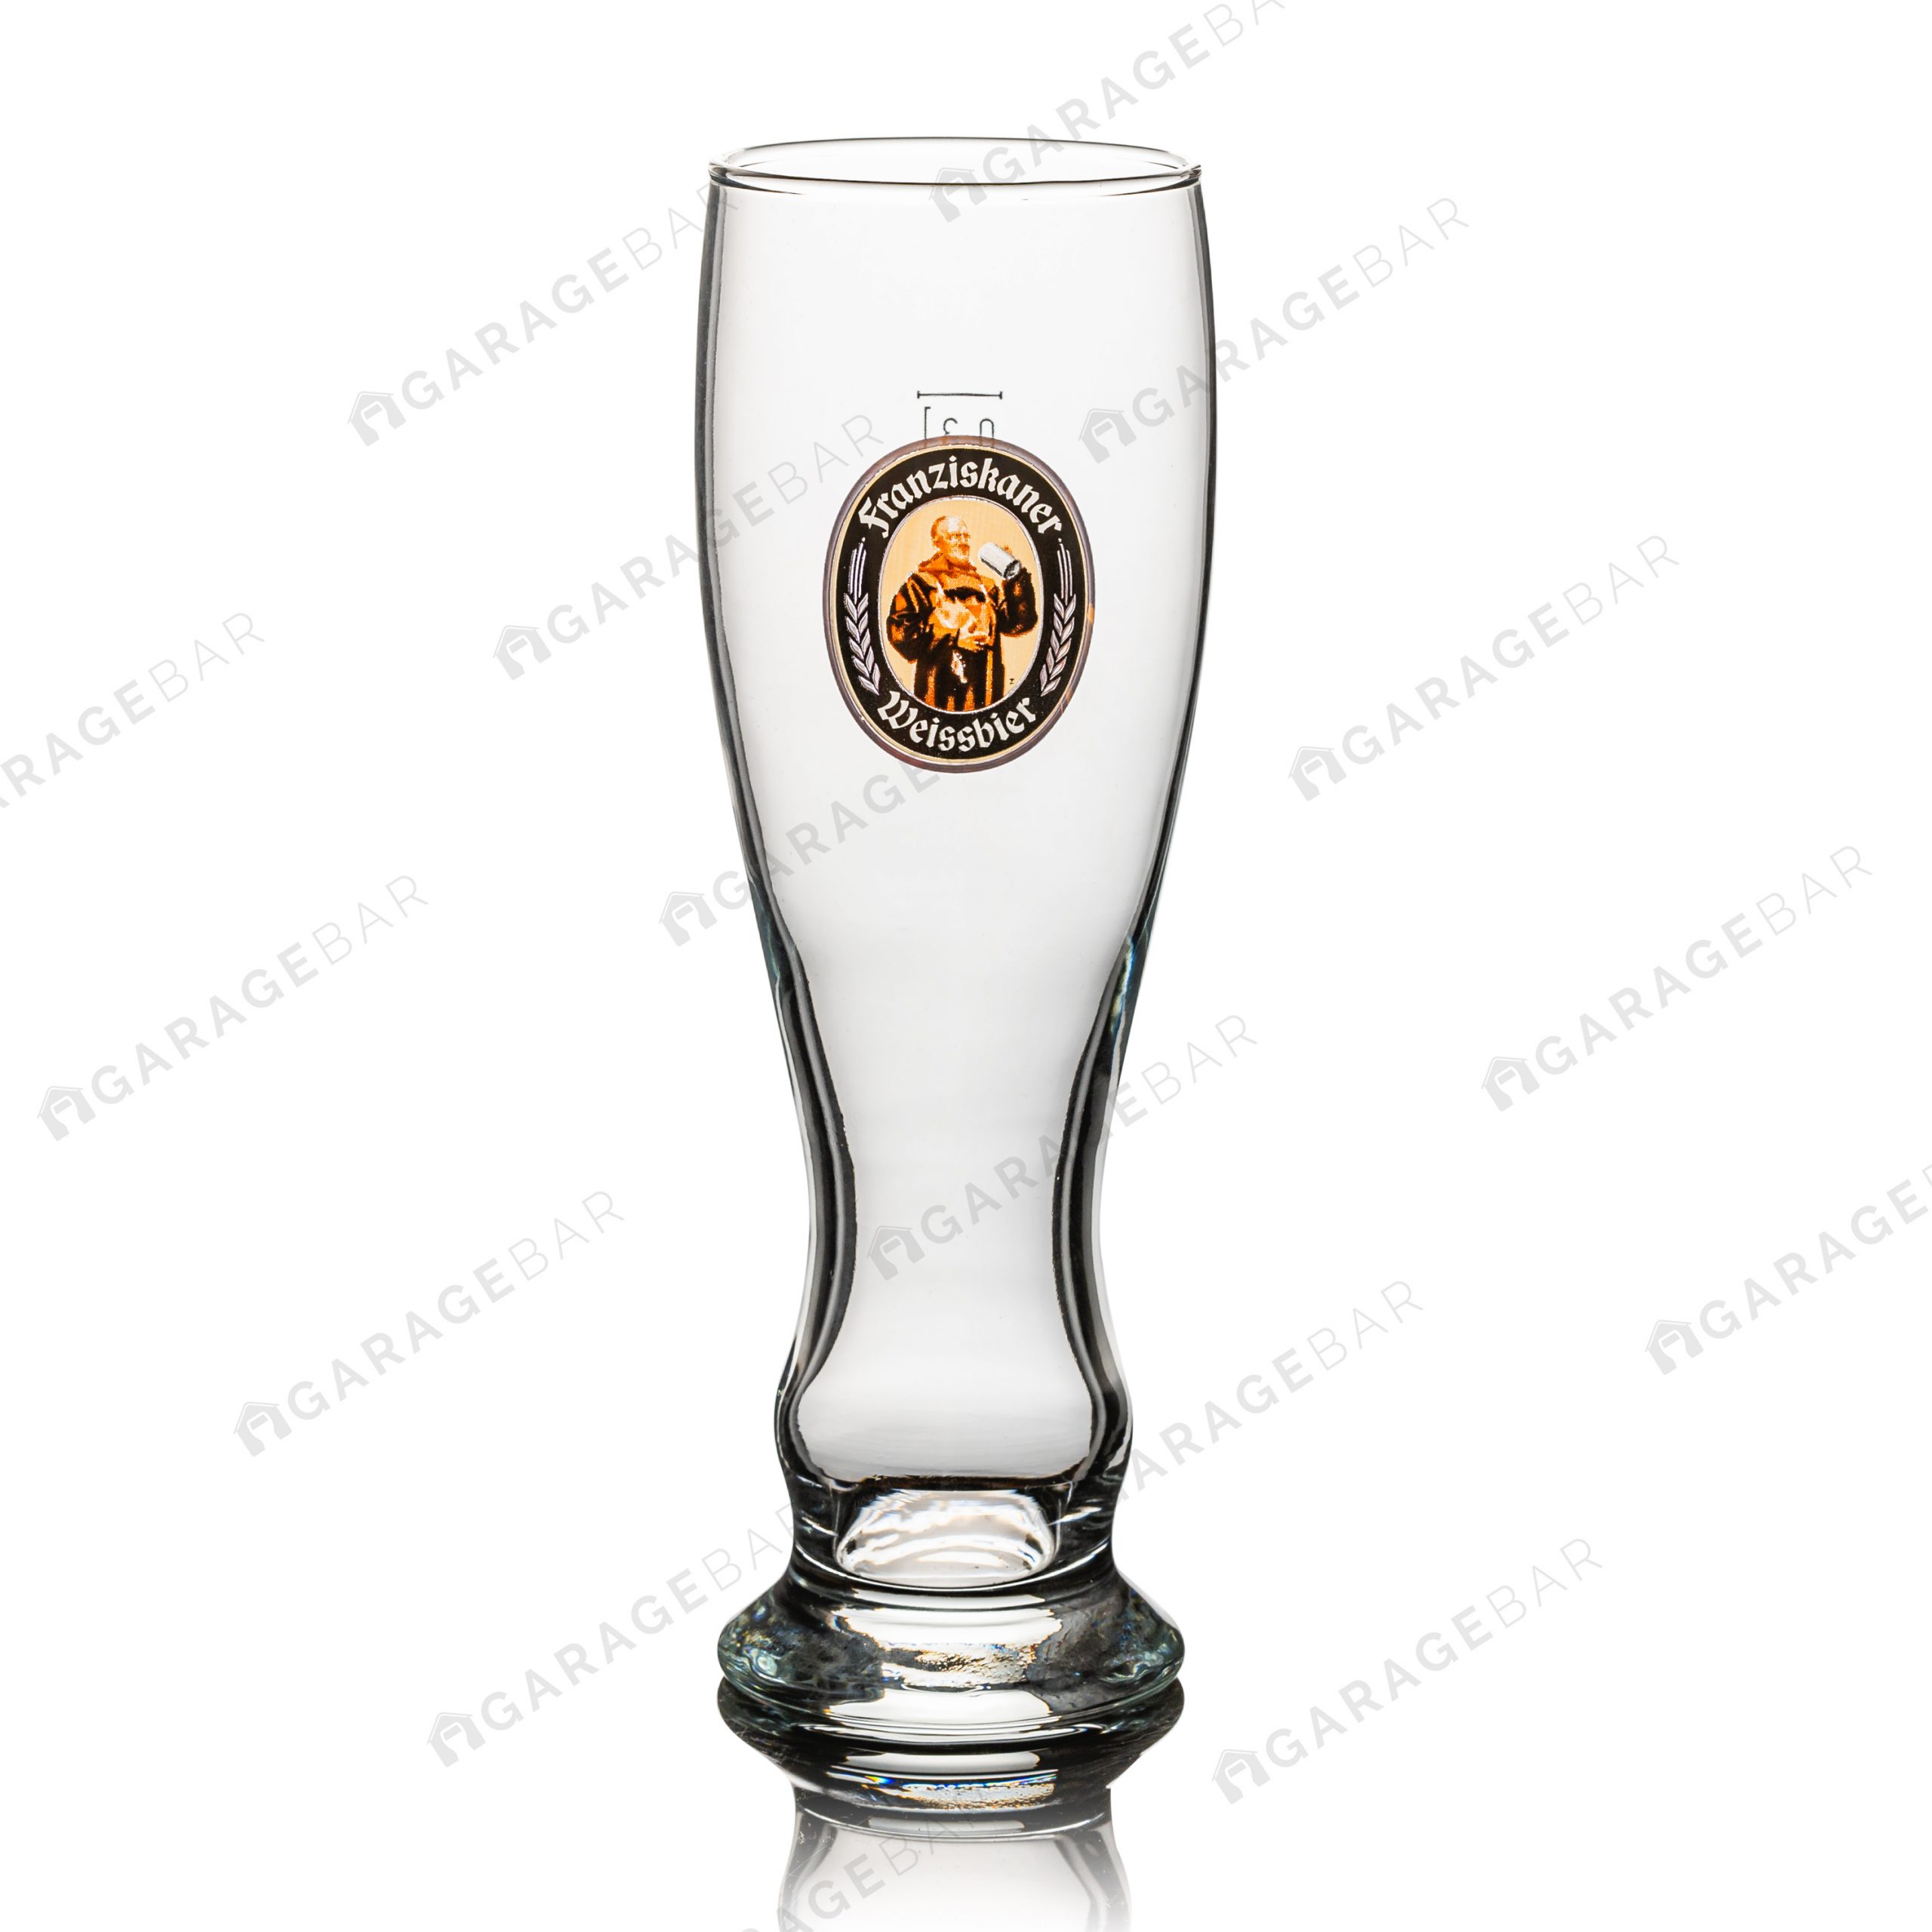 Franziskaner 0,3l Beer Glass